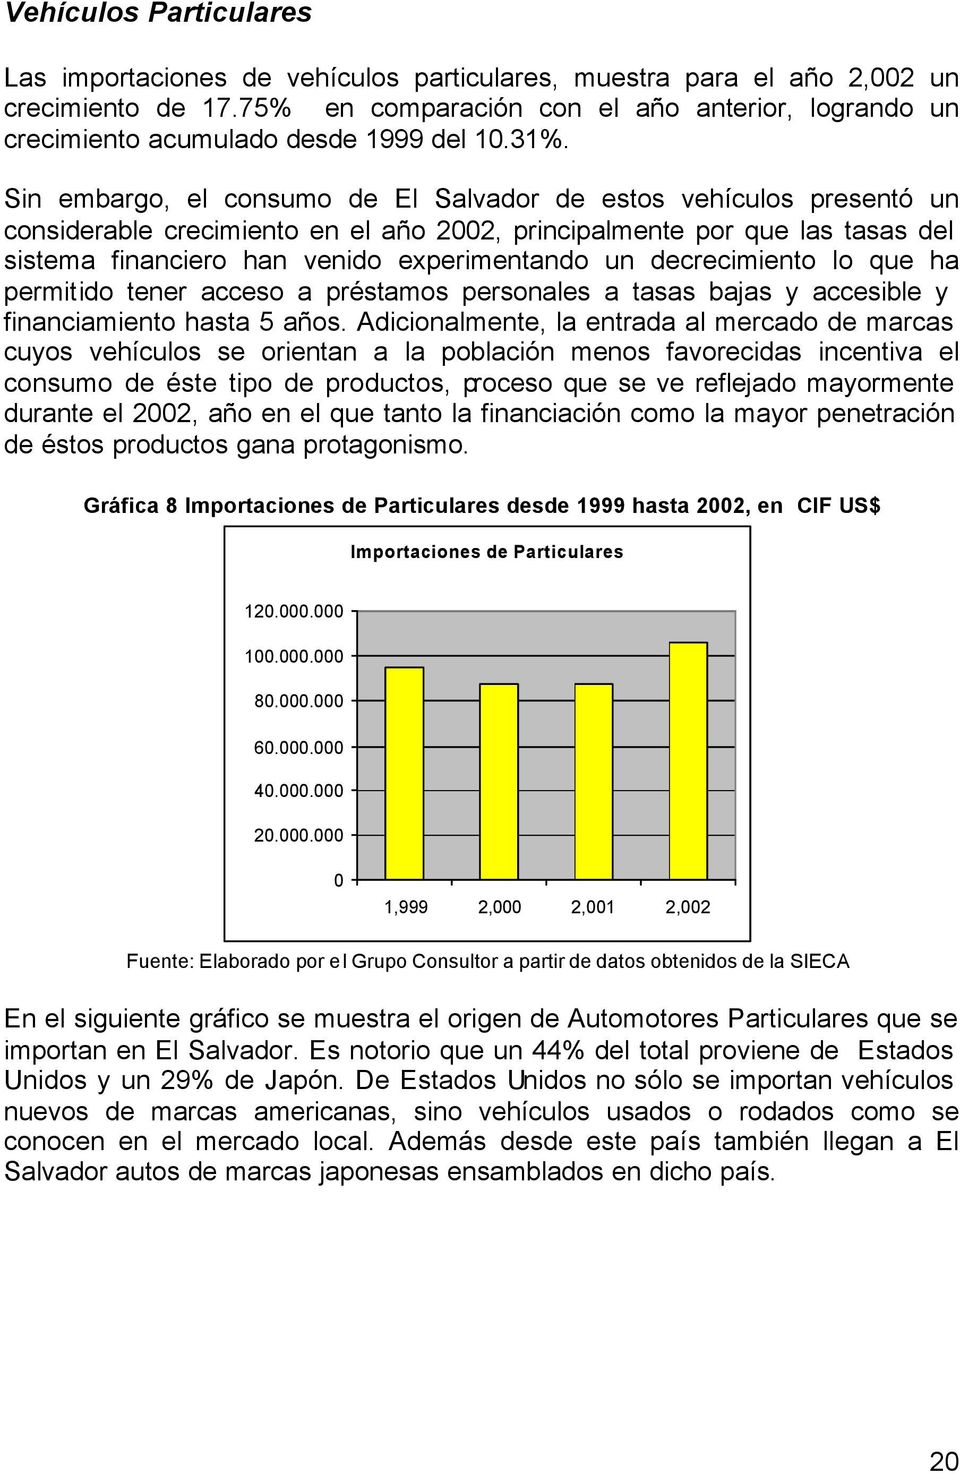 Sin embargo, el consumo de El Salvador de estos vehículos presentó un considerable crecimiento en el año 2002, principalmente por que las tasas del sistema financiero han venido experimentando un